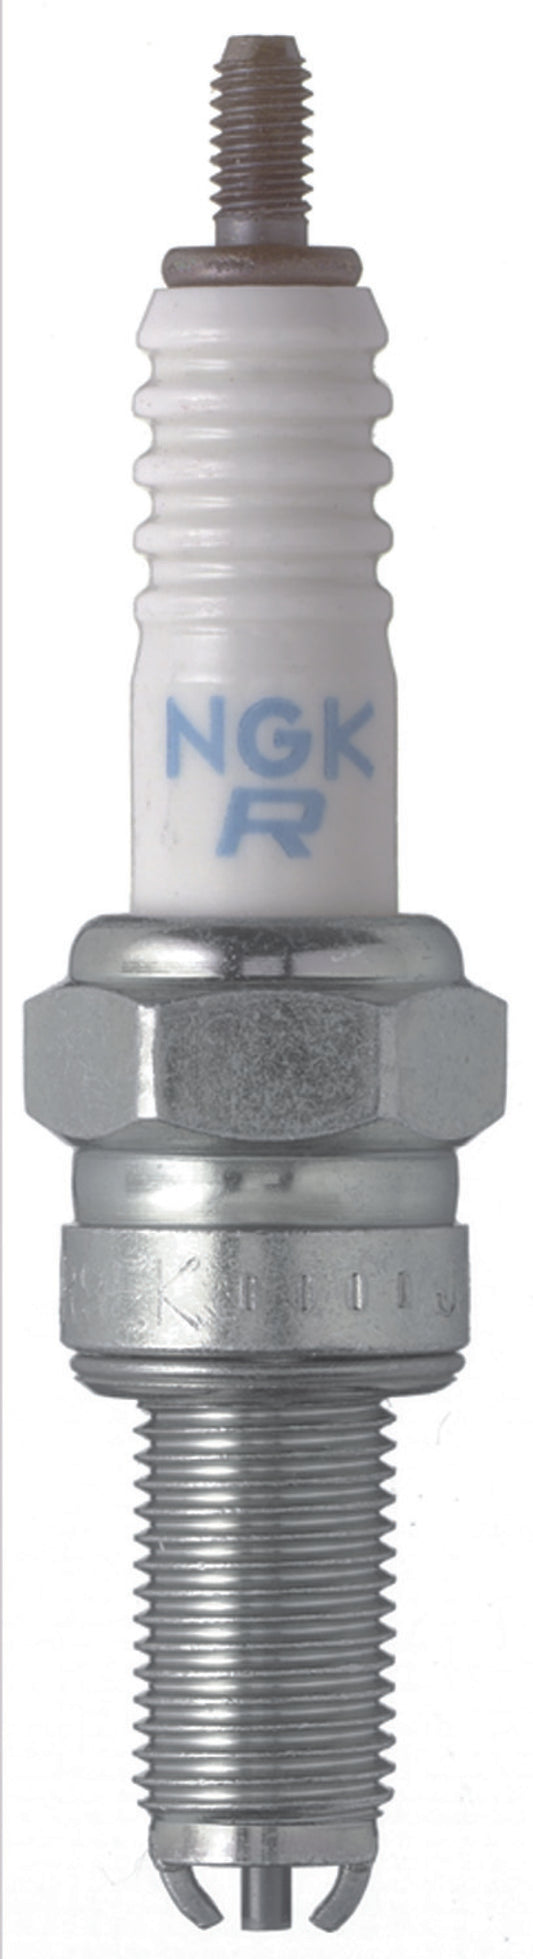 NGK Nickel Spark Plug Box of 10 (CR9EK)